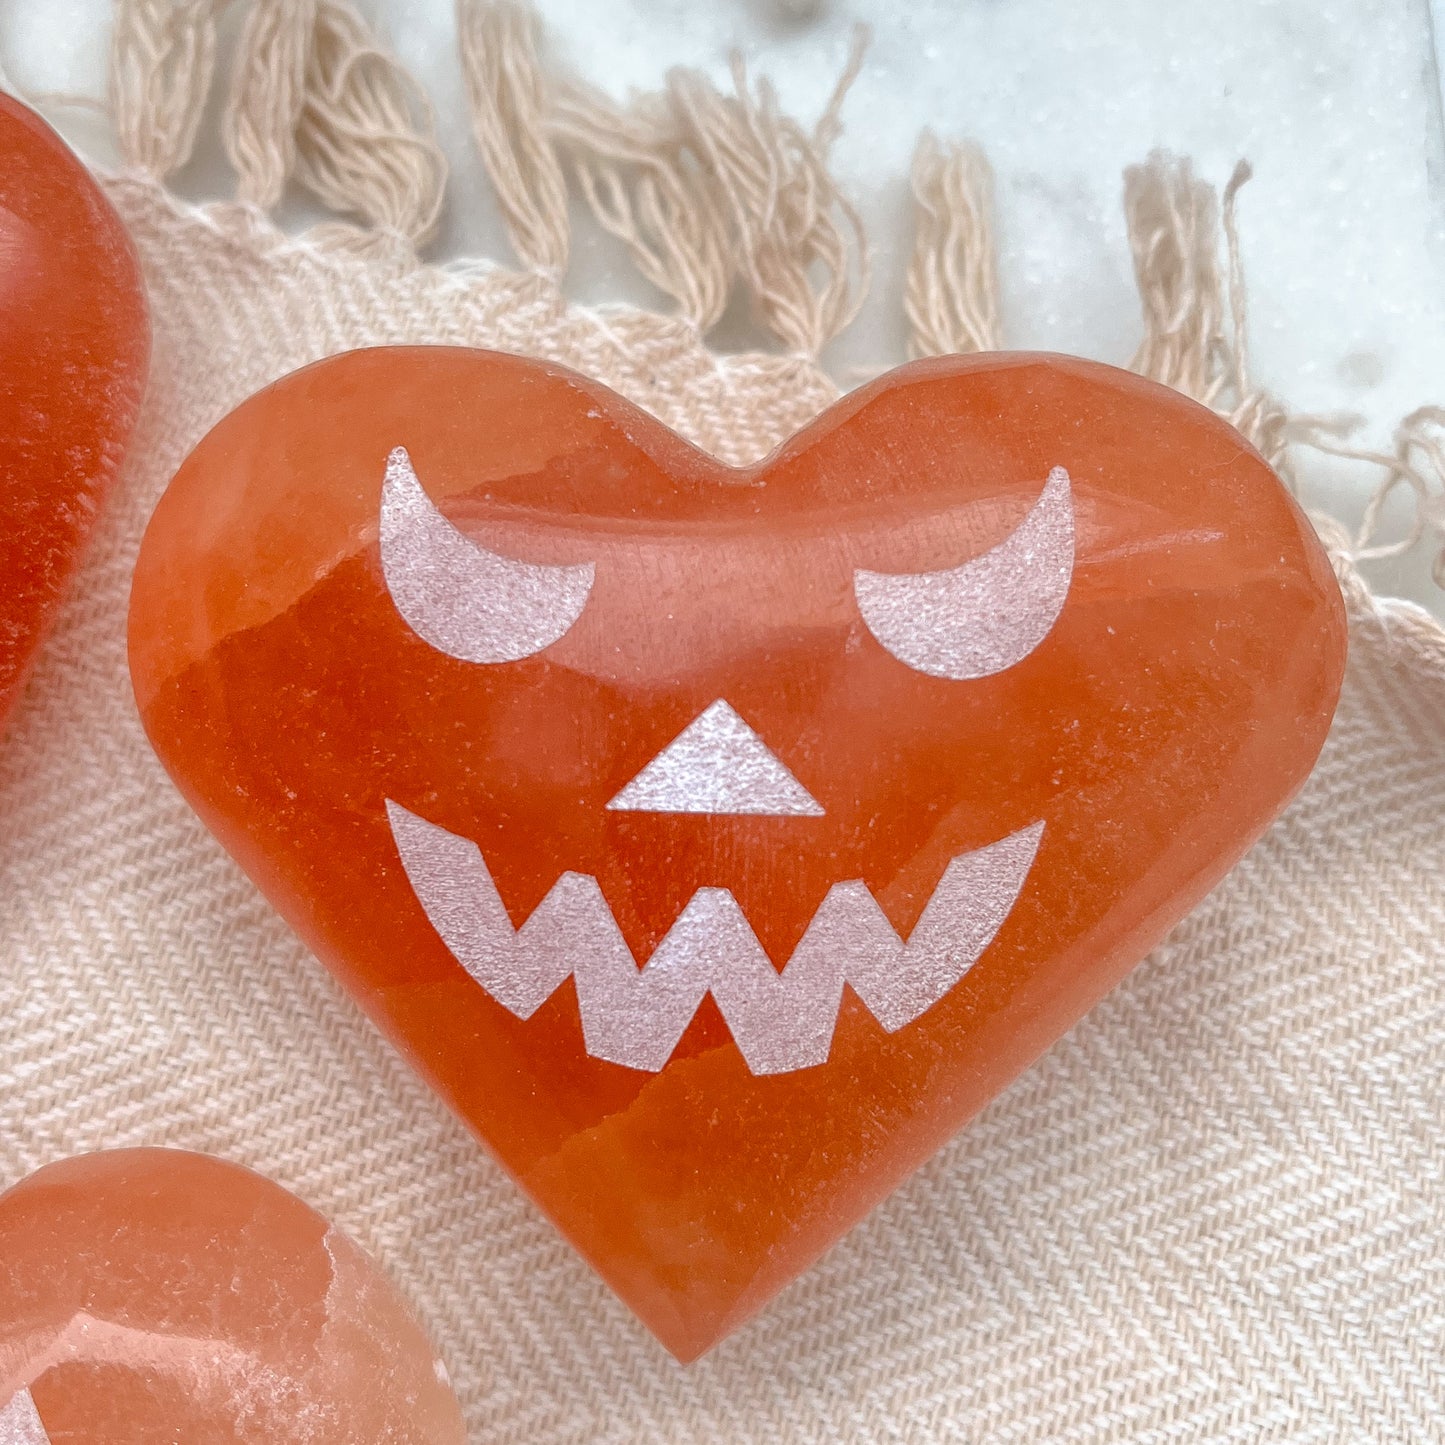 Peach Selenite Heart-o-Lanterns